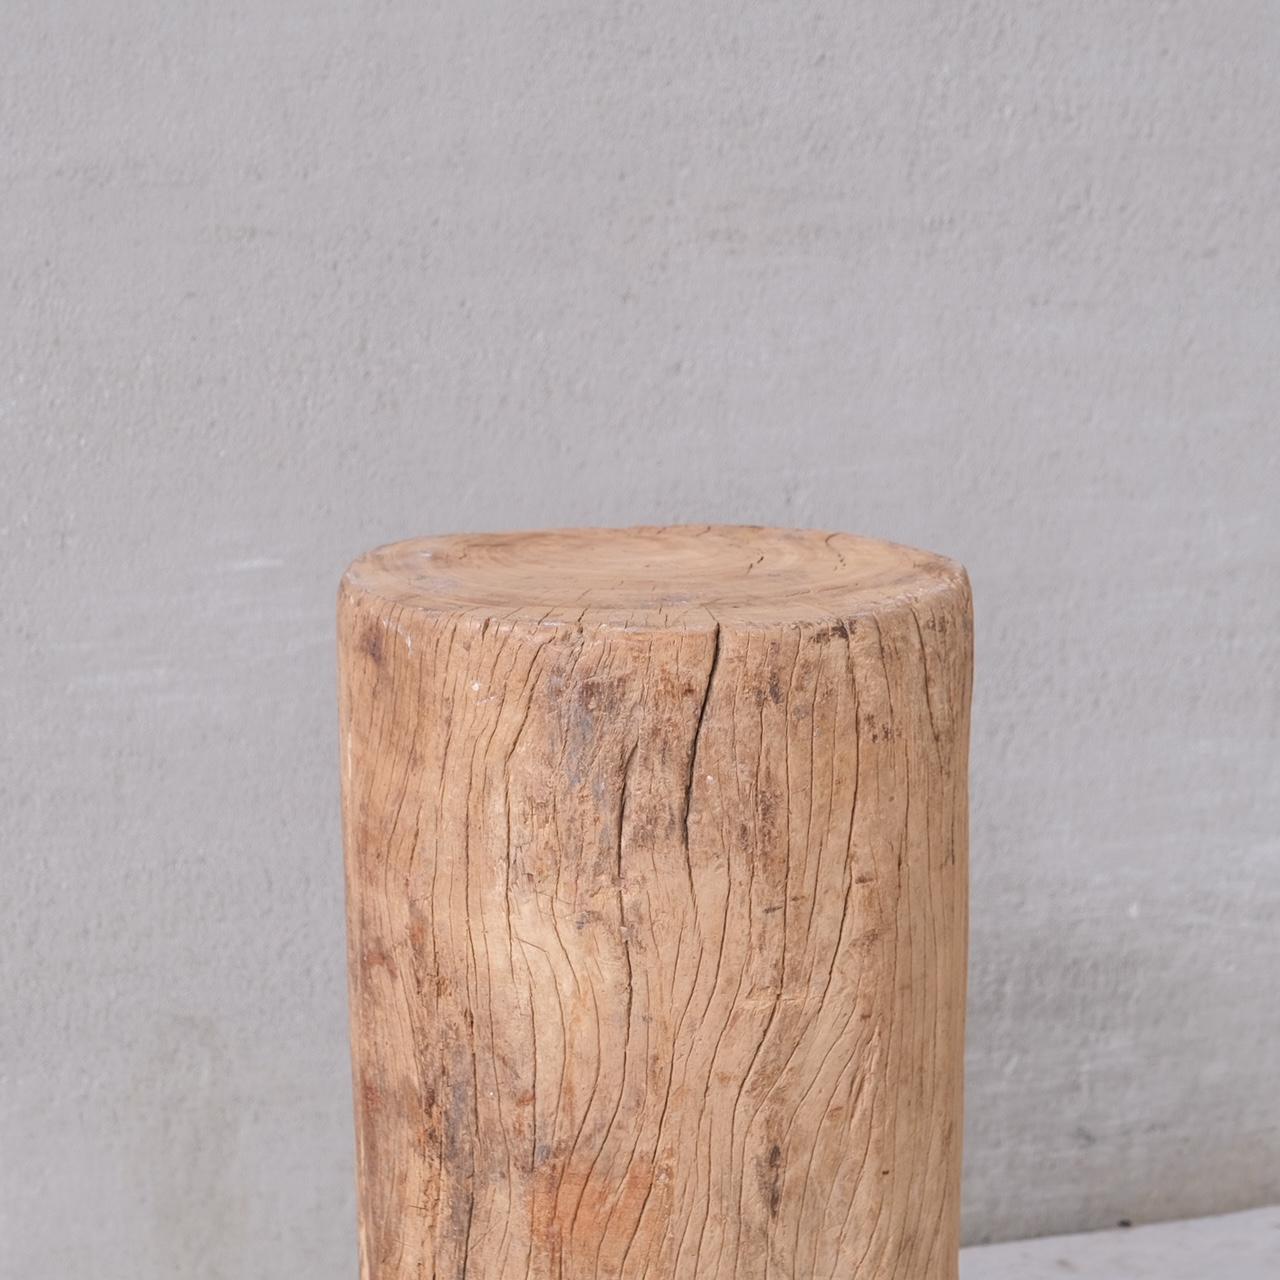 French Primitive Solid Wooden Wabi-Sabi Pedestal or Side Table For Sale